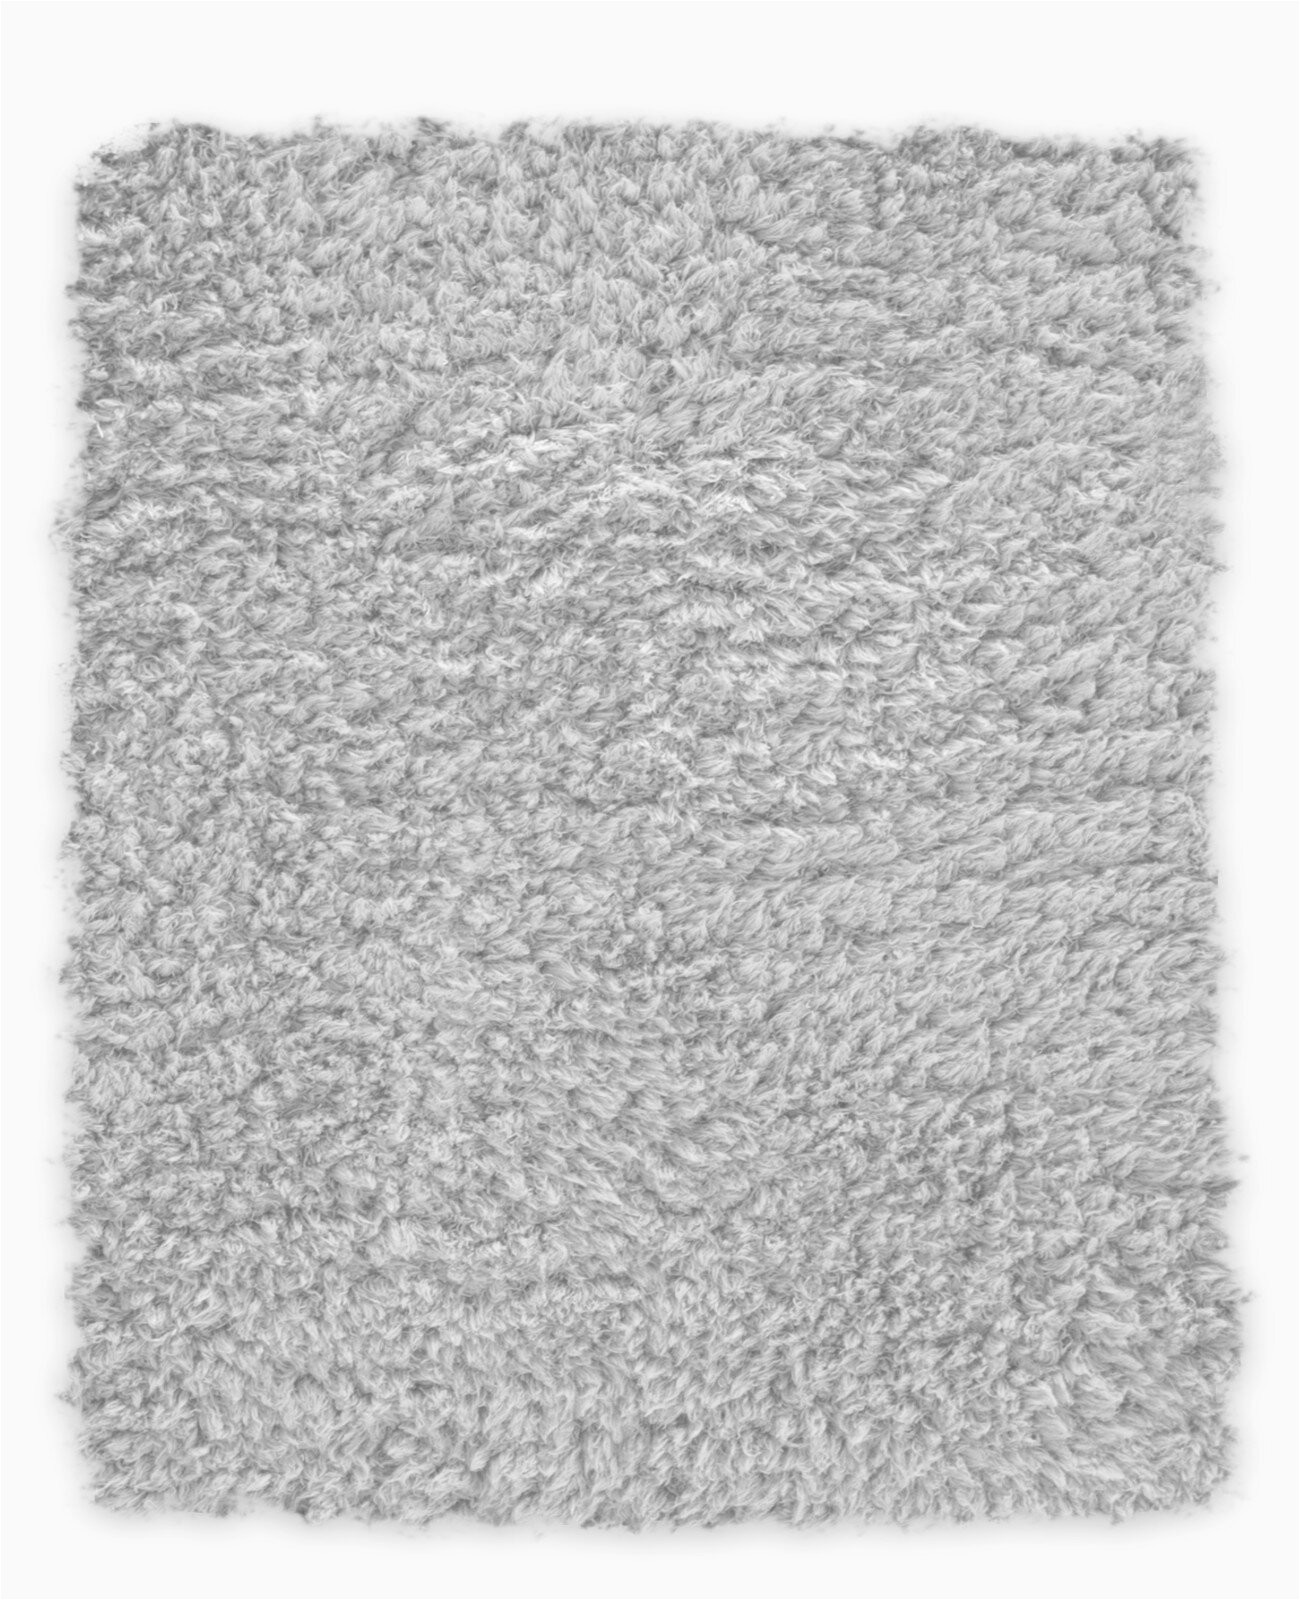 earlscourt waterproof memory foam bath rug